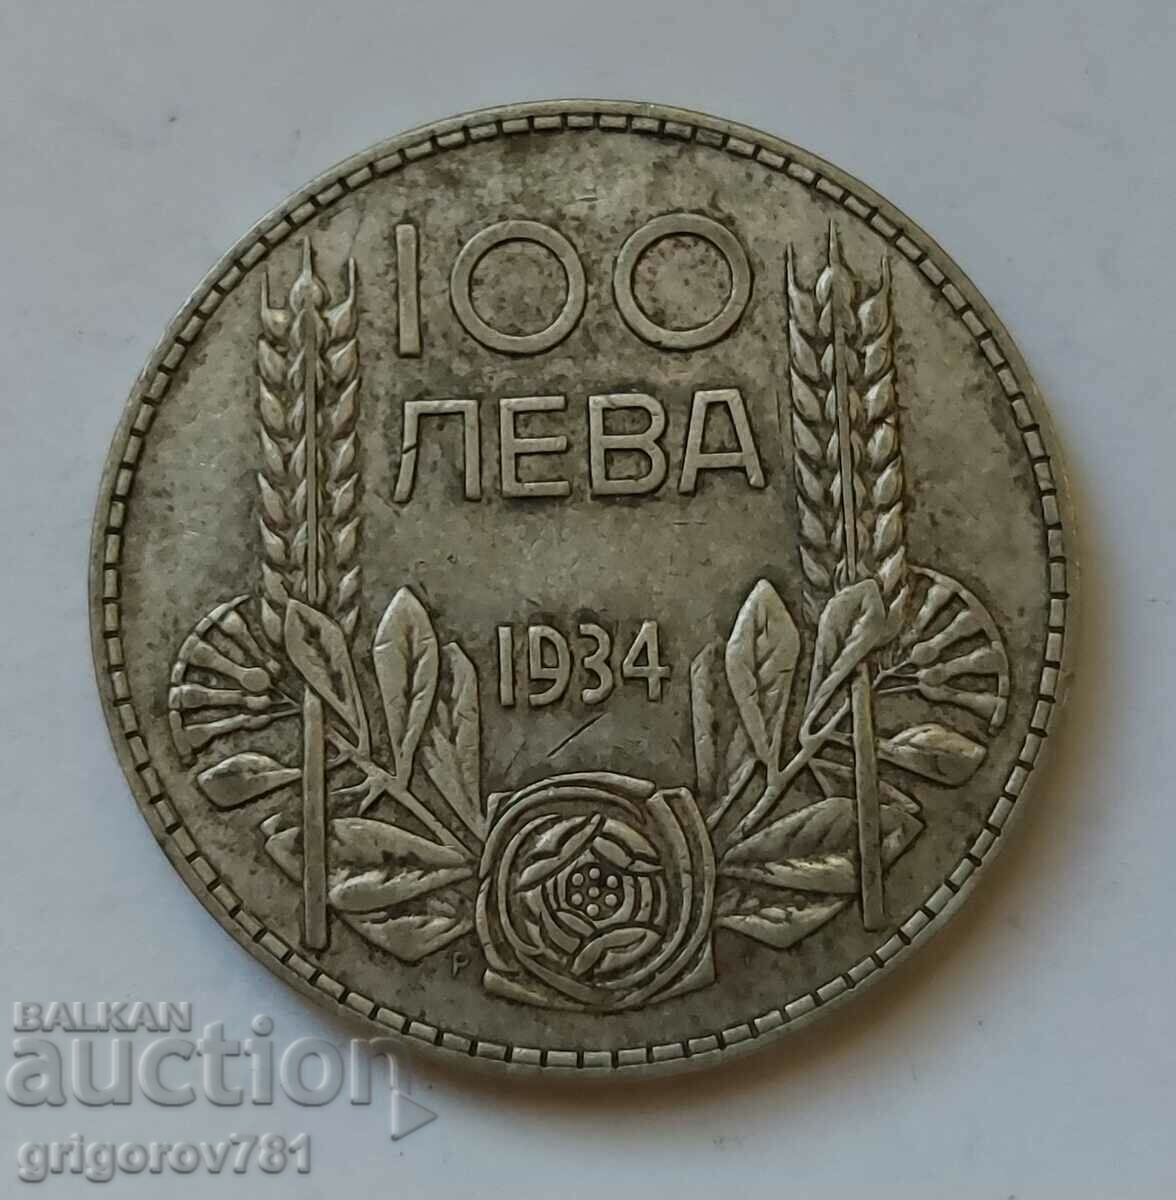 100 leva silver Bulgaria 1934 - silver coin #131